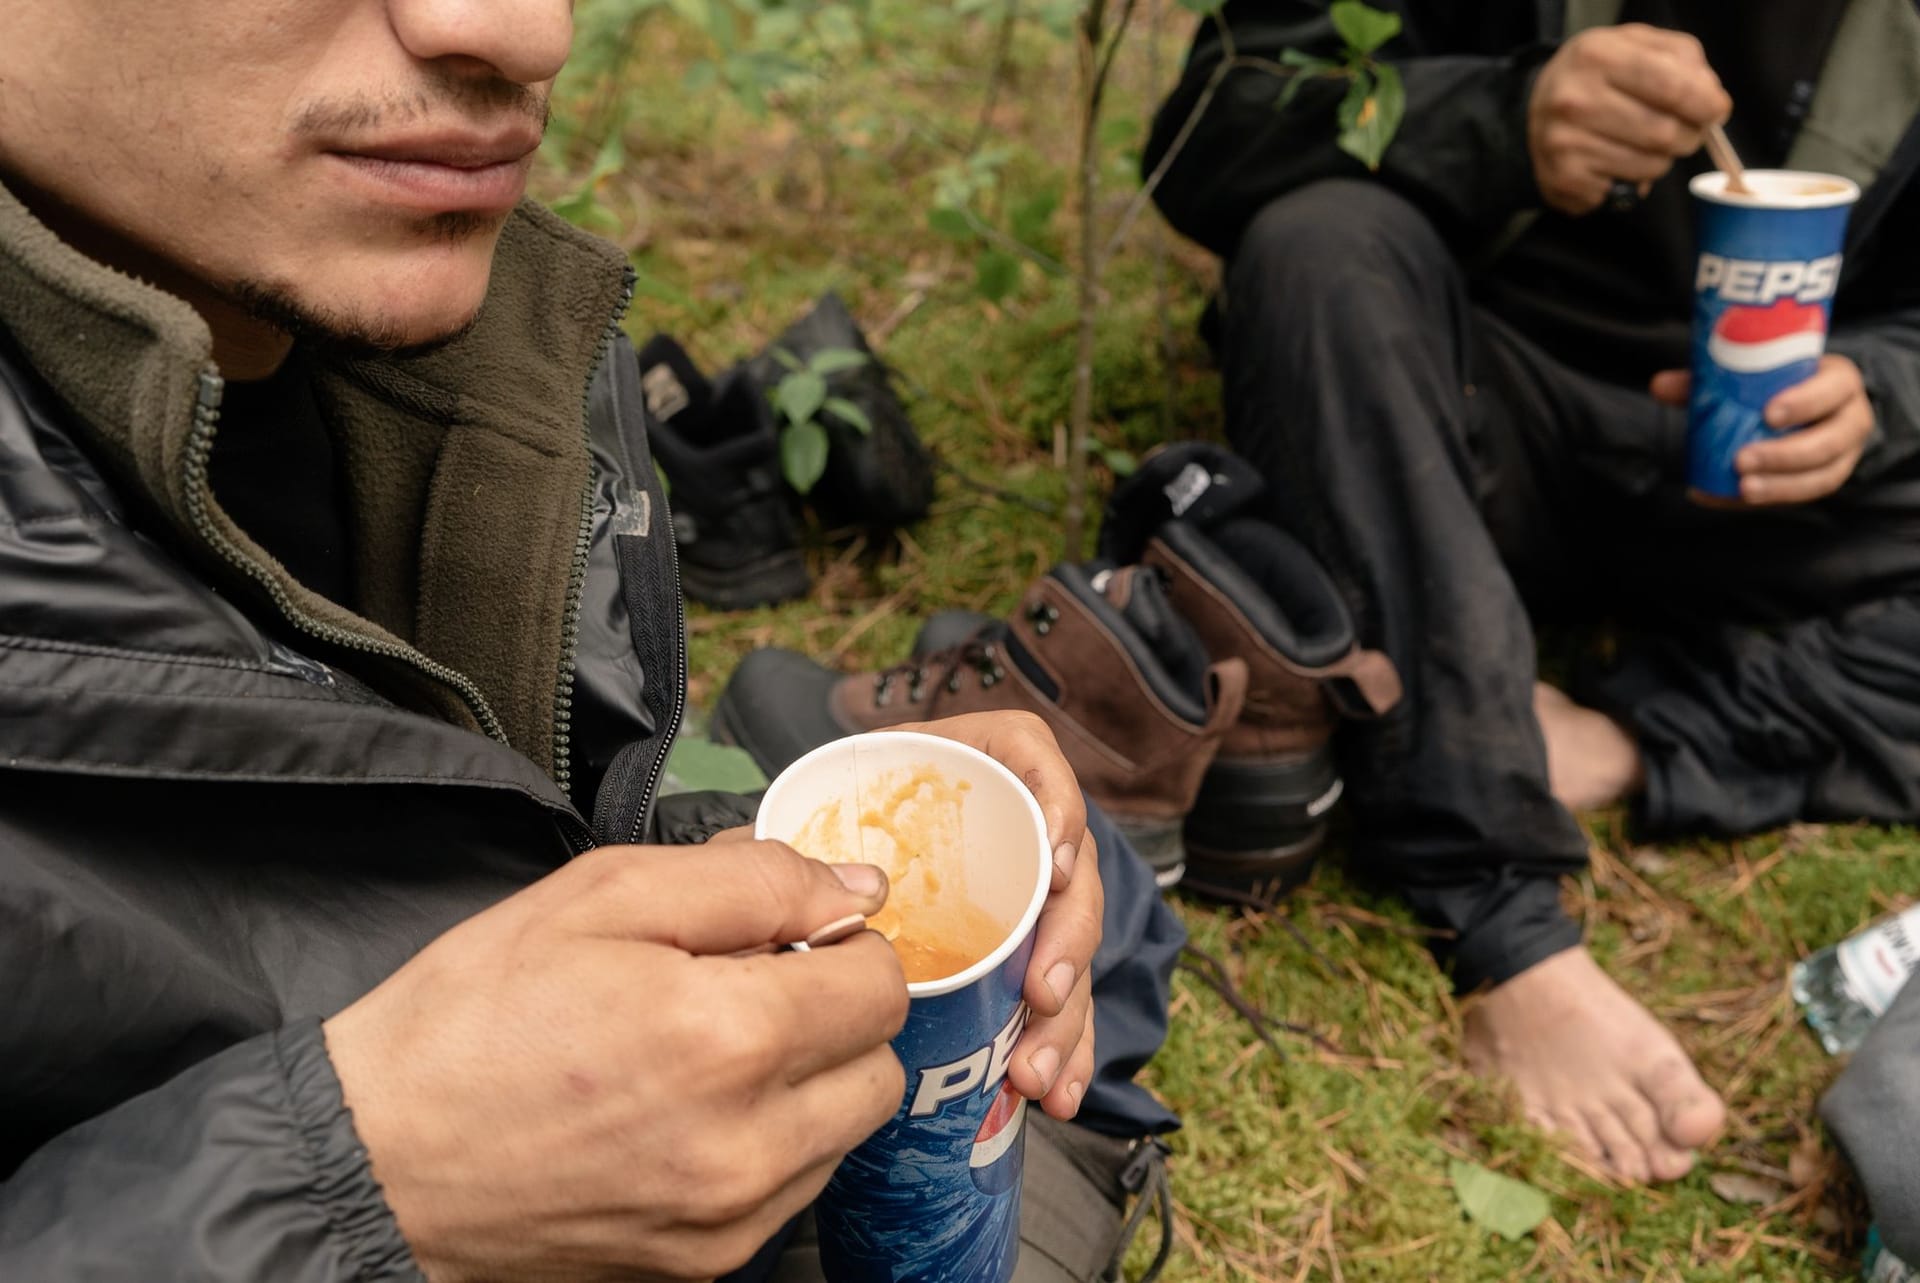 Suppe im Wald: Die beiden Männer verstecken sich hier vor dem polnischen Grenzschutz, denn Asyl wollen sie in Deutschland beantragen.